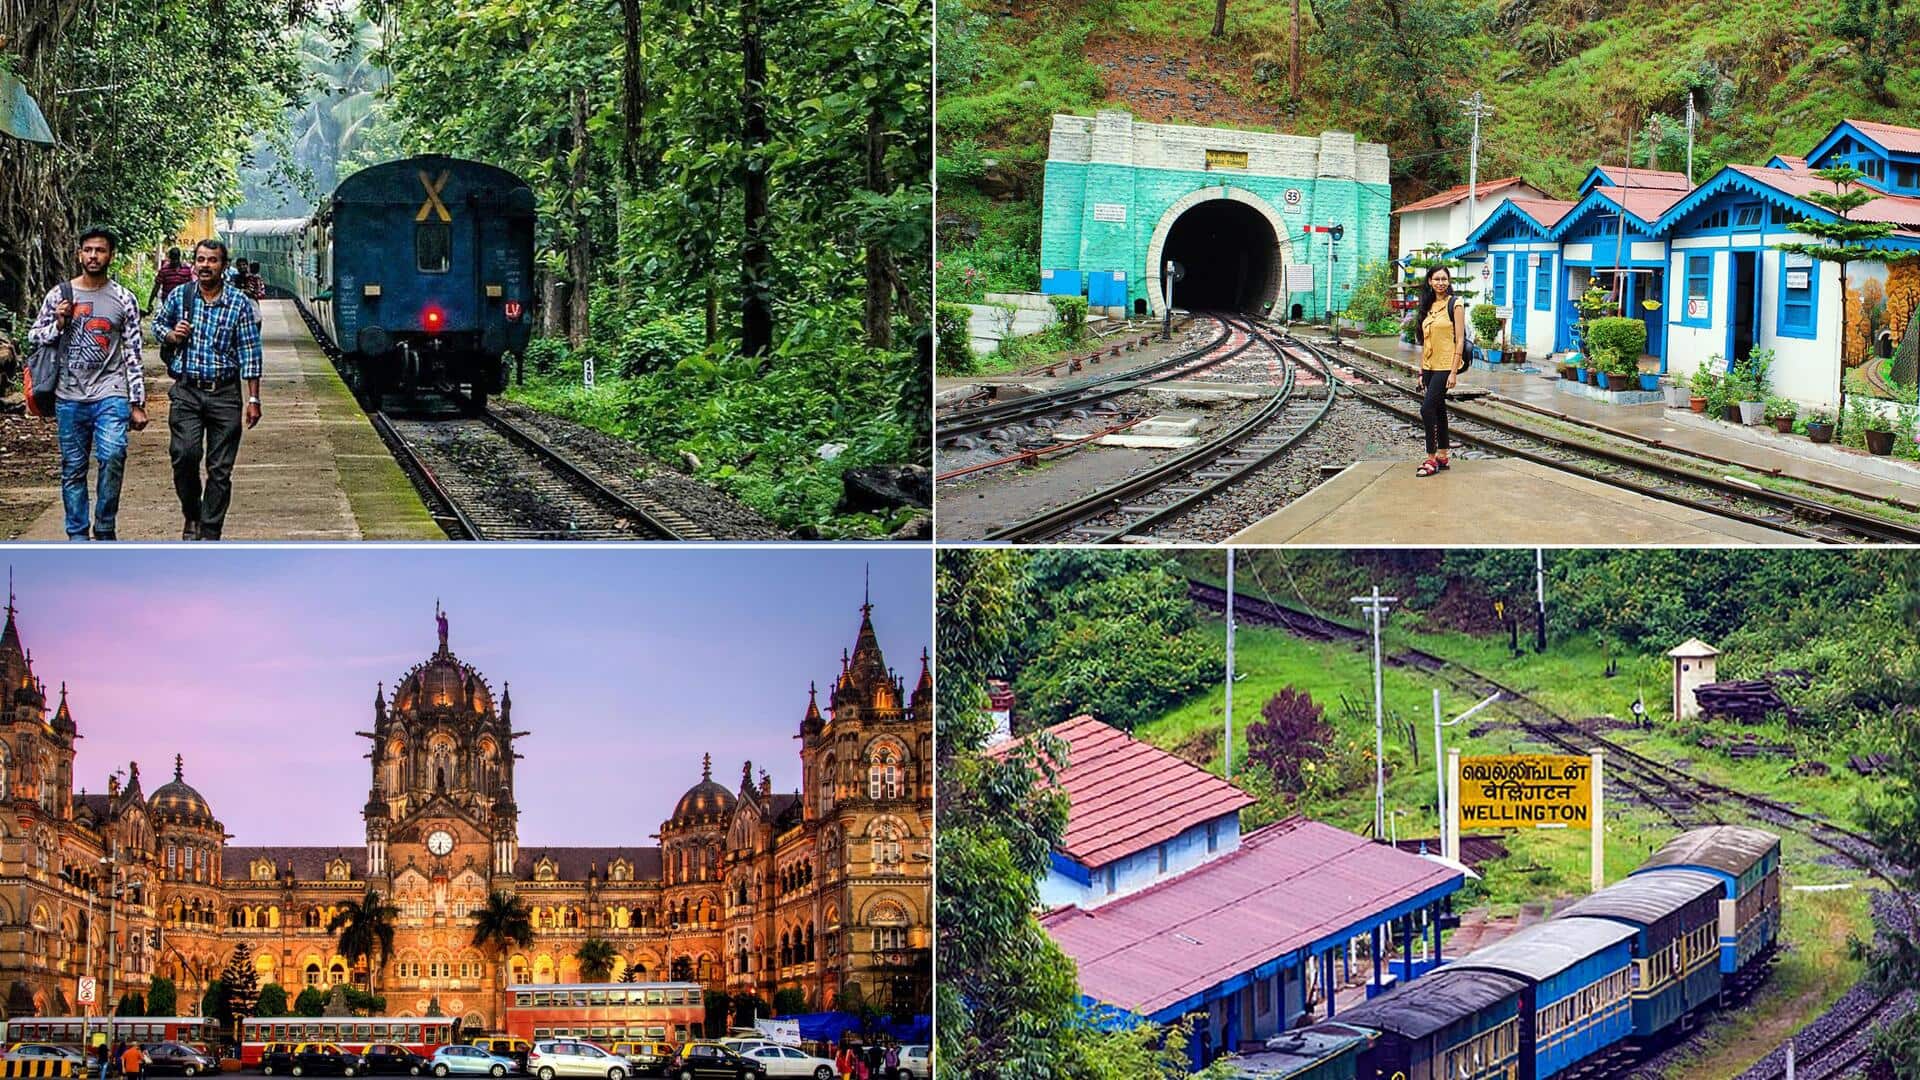 ये हैं भारत के 5 सबसे खूबसूरत और आकर्षक रेलवे स्टेशन